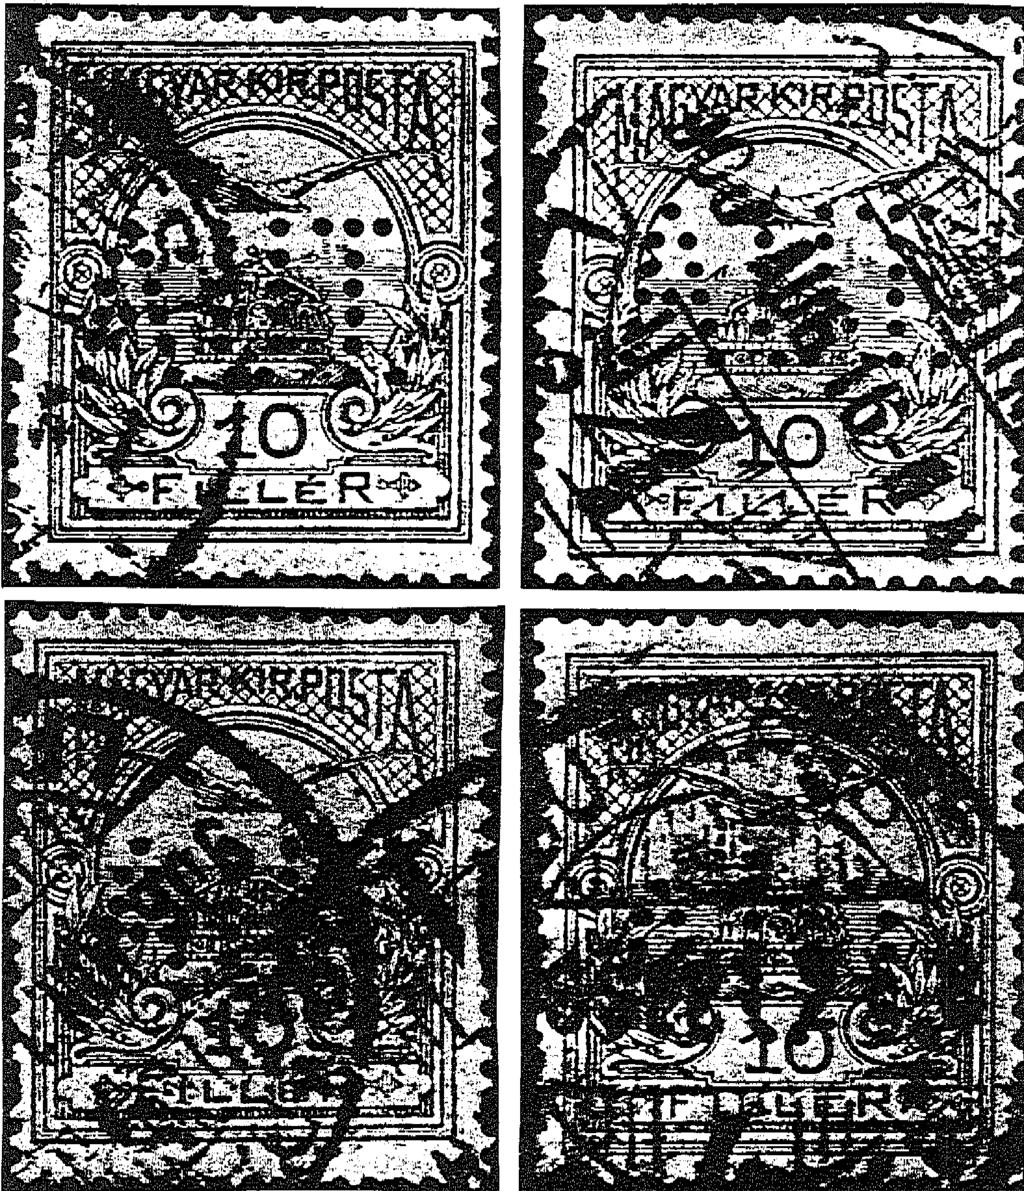 Az első eddig ismert használt bélyeg dátuma: 906. JUN 7 BUDAPEST 4. LFI bélyegzéssel. Érdekessége, hogy a bélyeg fordított AUT. lyukasztású. A Budapest 6.